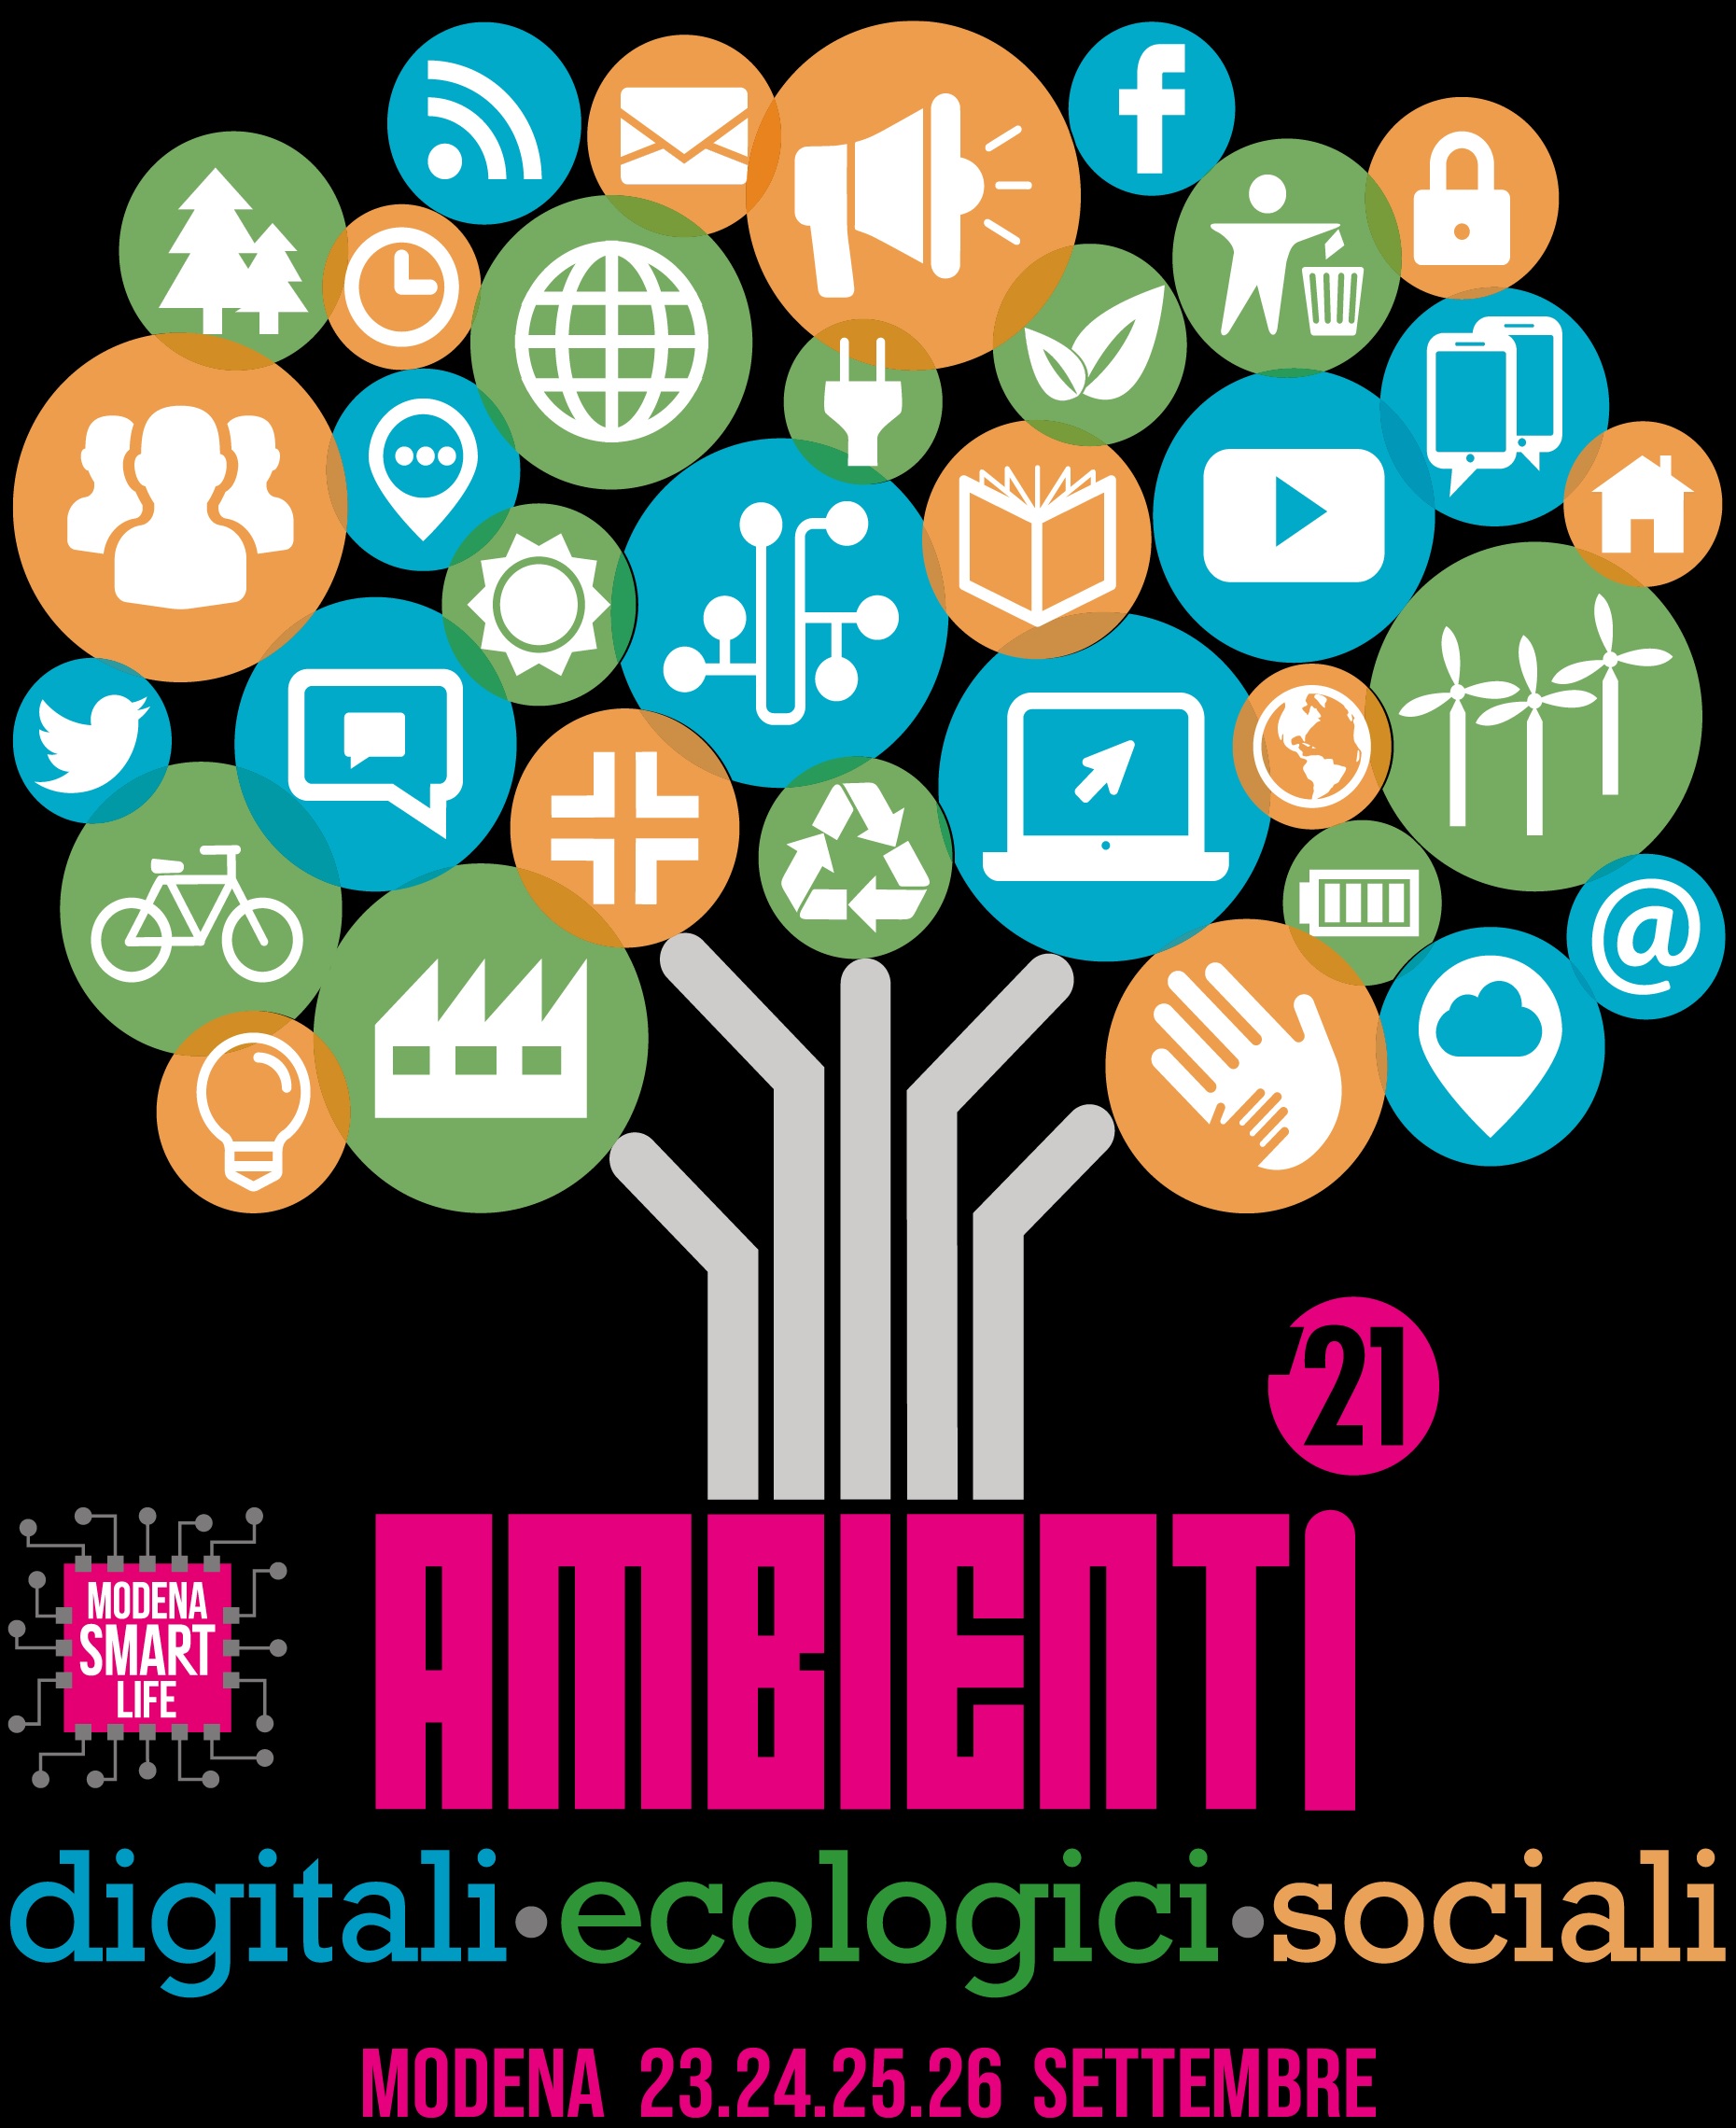  “Ambienti” è il tema dell’edizione 2021 di Modena Smart Life